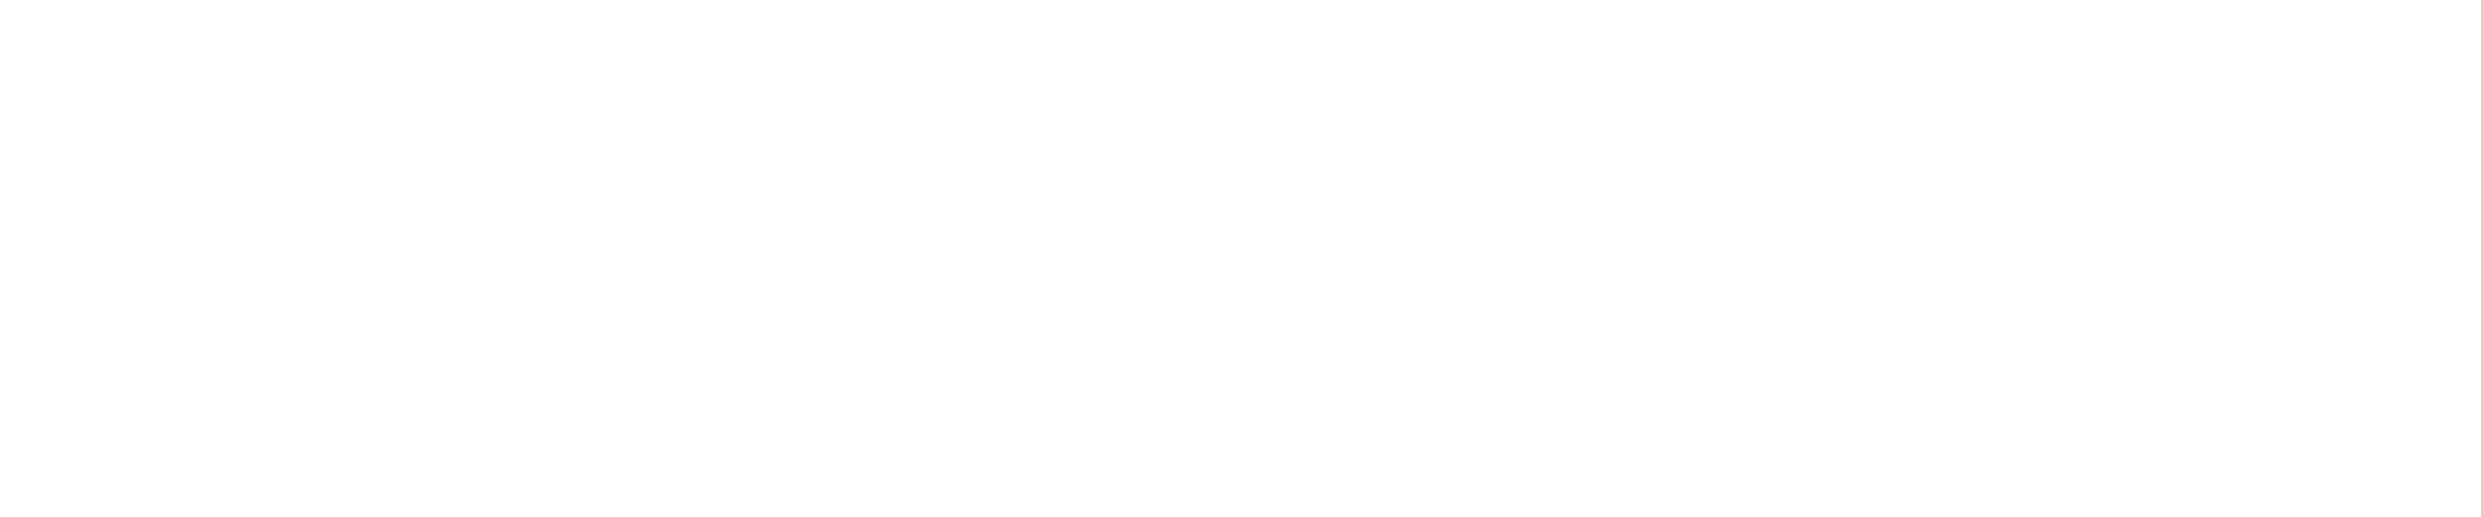 regione-emilia-romagna-white.png